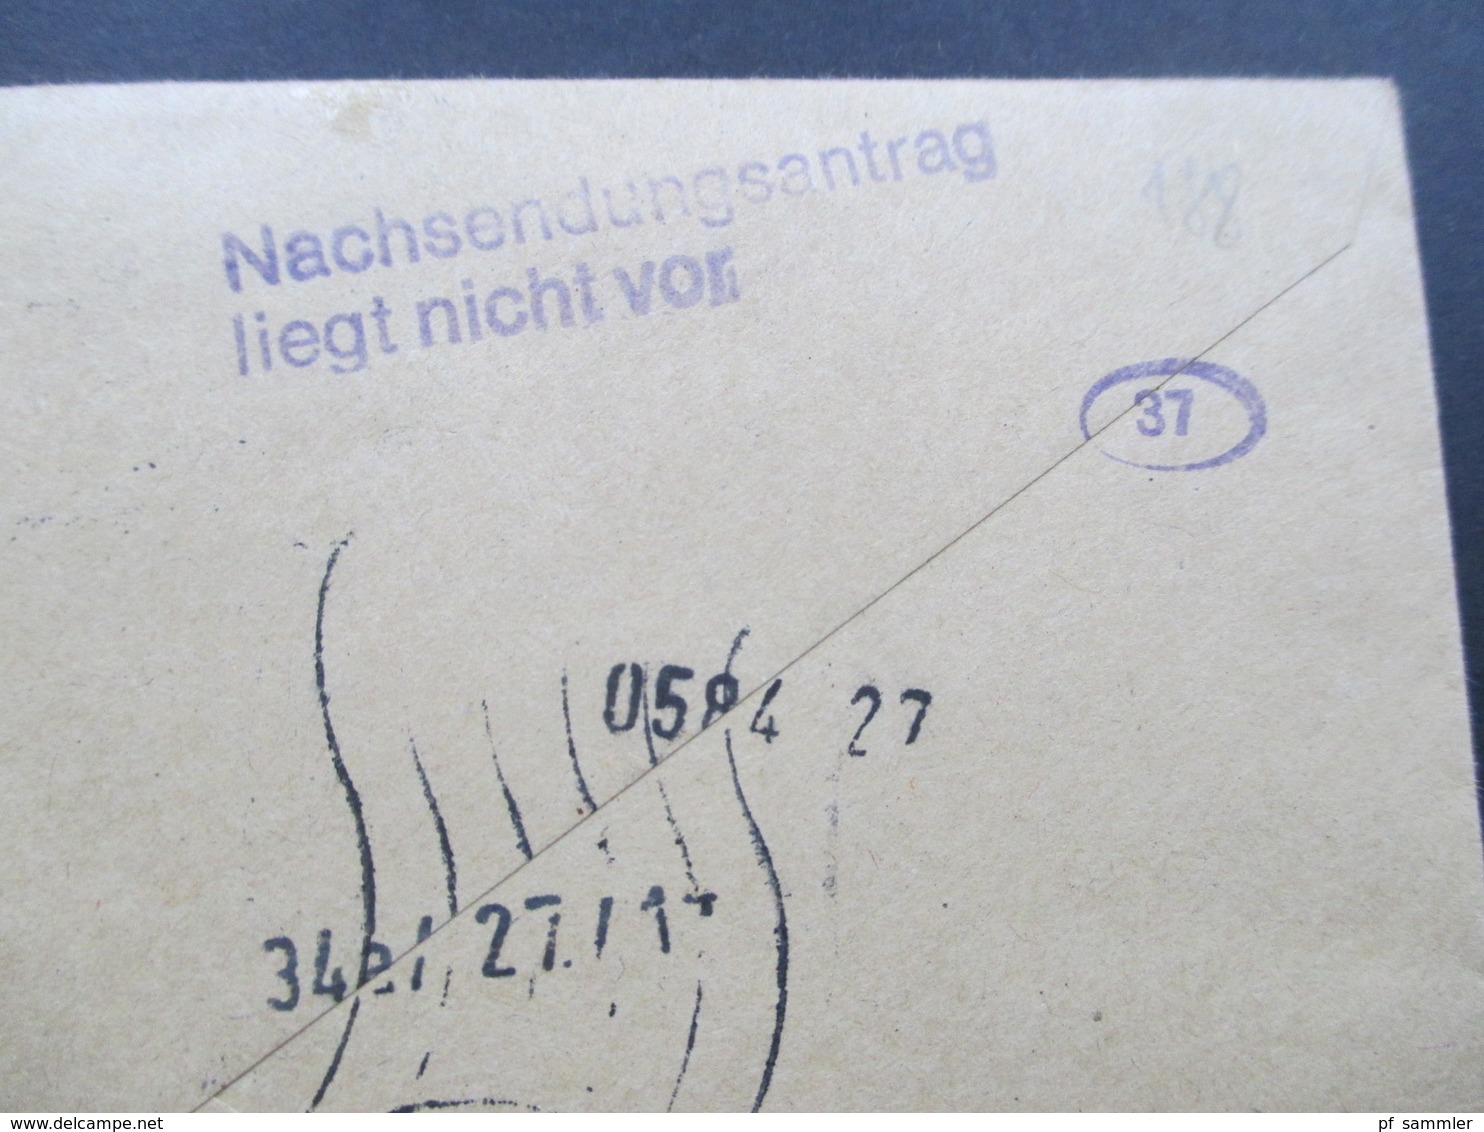 Berlin 1977 Eilbrief Mit Berlin ZD 4x W43 Als 12er Block Aus MHB. Viele Stempel! Nachsendeantrag Liegt Nicht Vor. - Cartas & Documentos